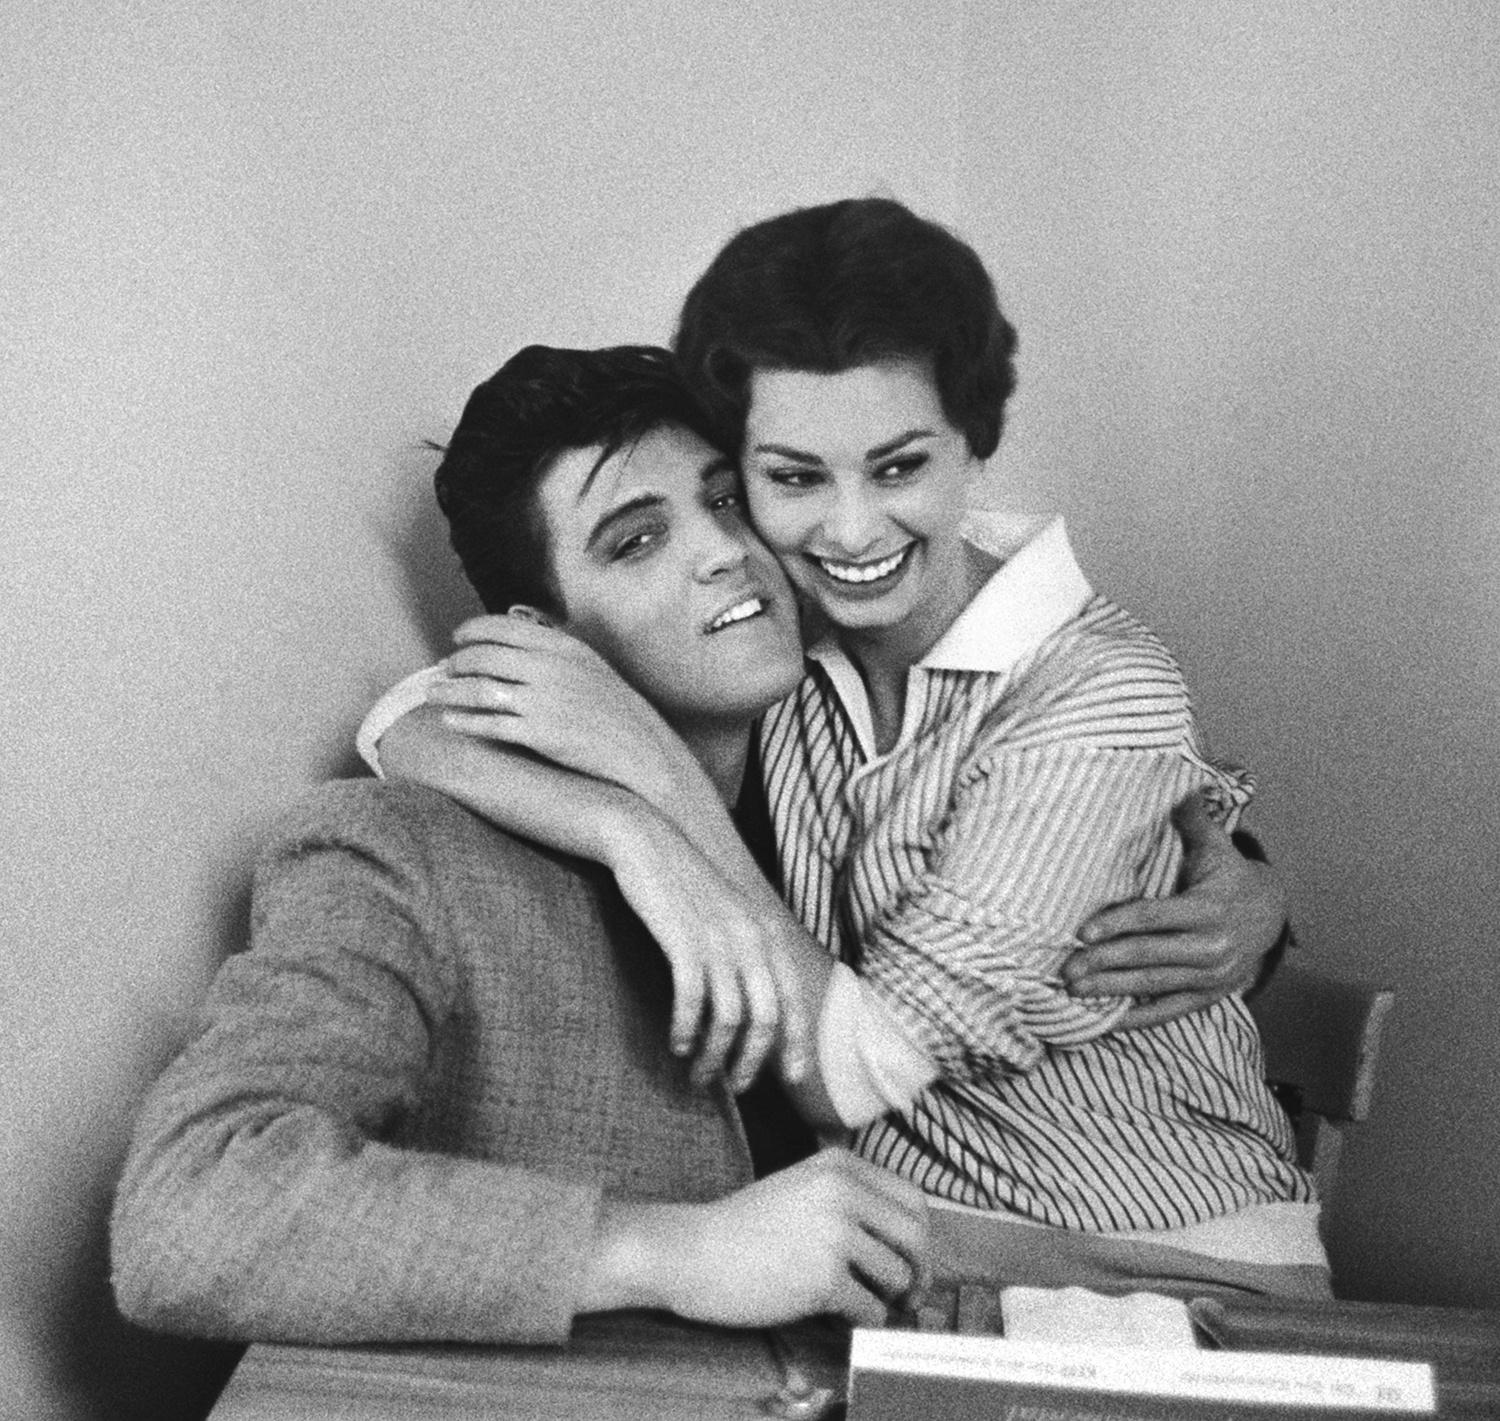 Elvis Presley et Sophia Loren, 1958  - Bob Willoughby (Photographie de portrait)
Expédition dans le monde entier disponible
Signé par Christopher Willoughby, exécuteur de la succession, portant le titre et les informations de copyright du